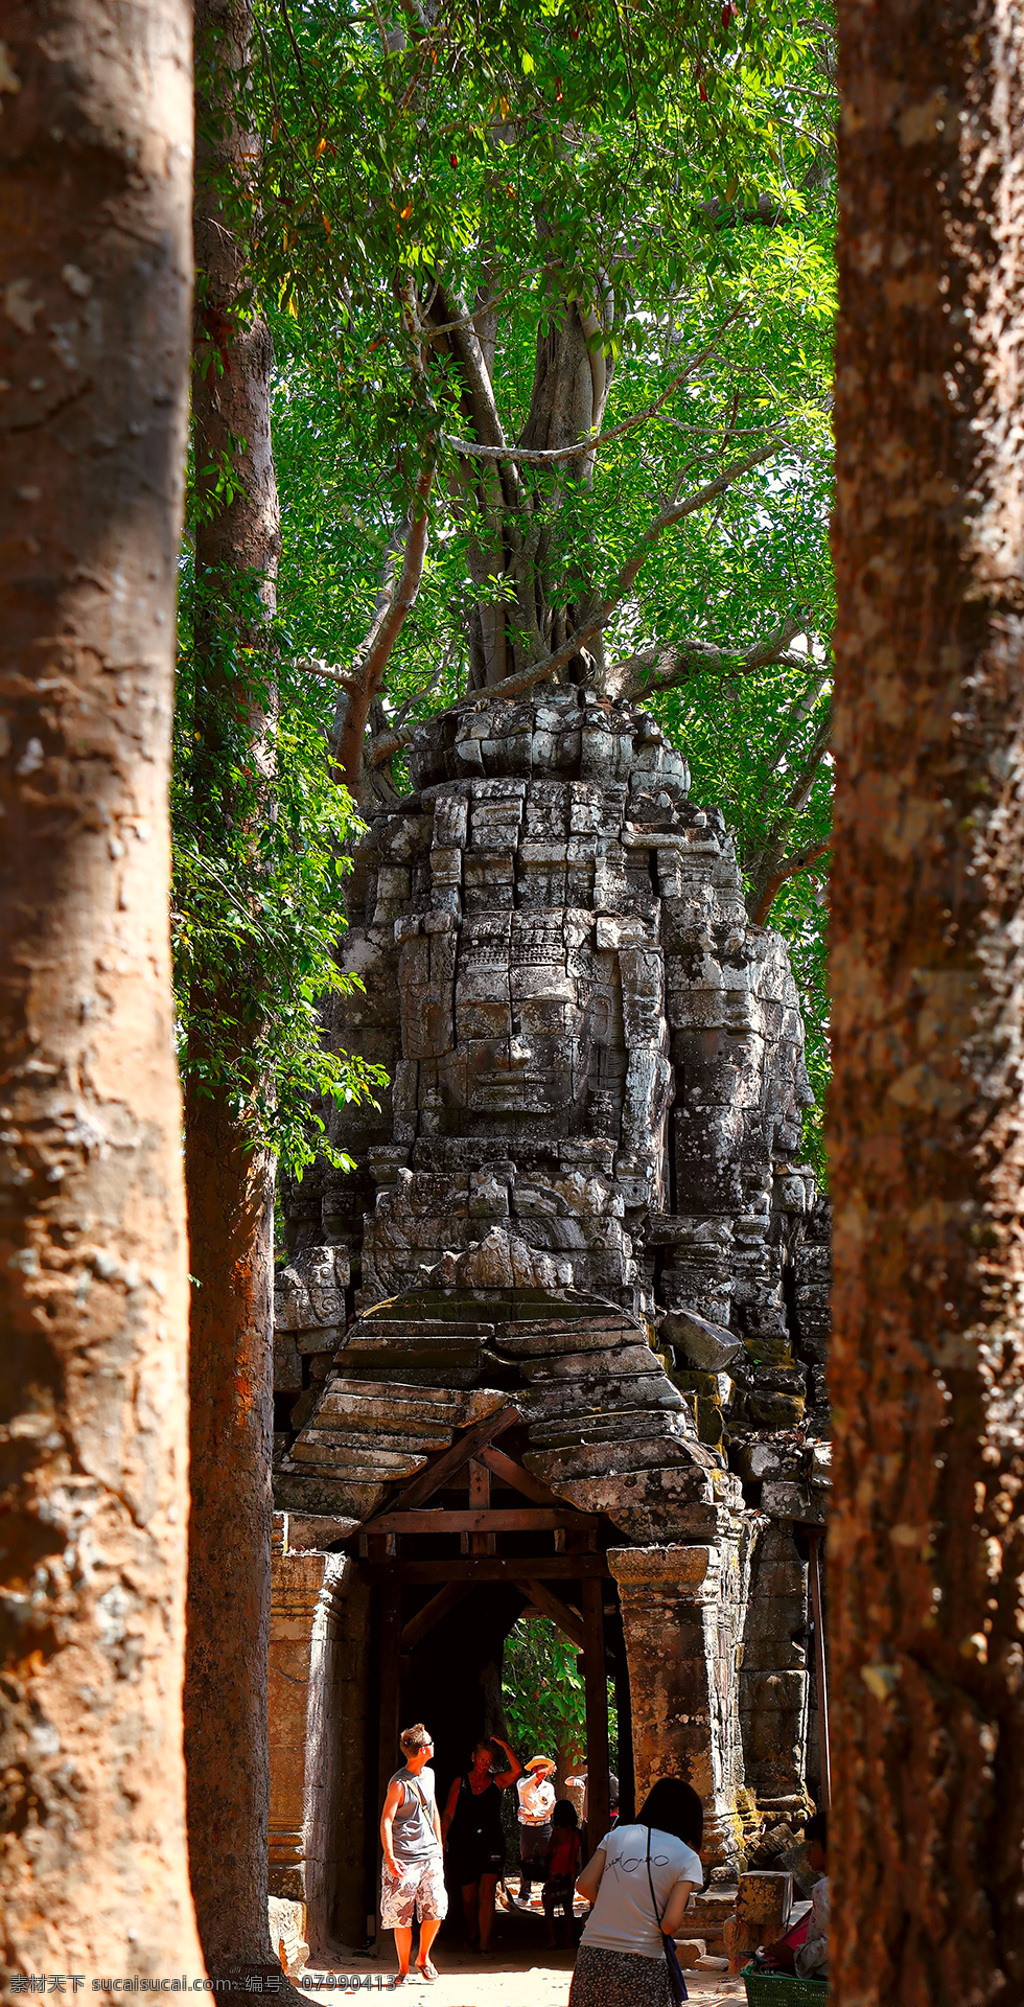 柬埔寨 地理环境 文化古迹 古城 视觉 旅游 旅游摄影 国外旅游